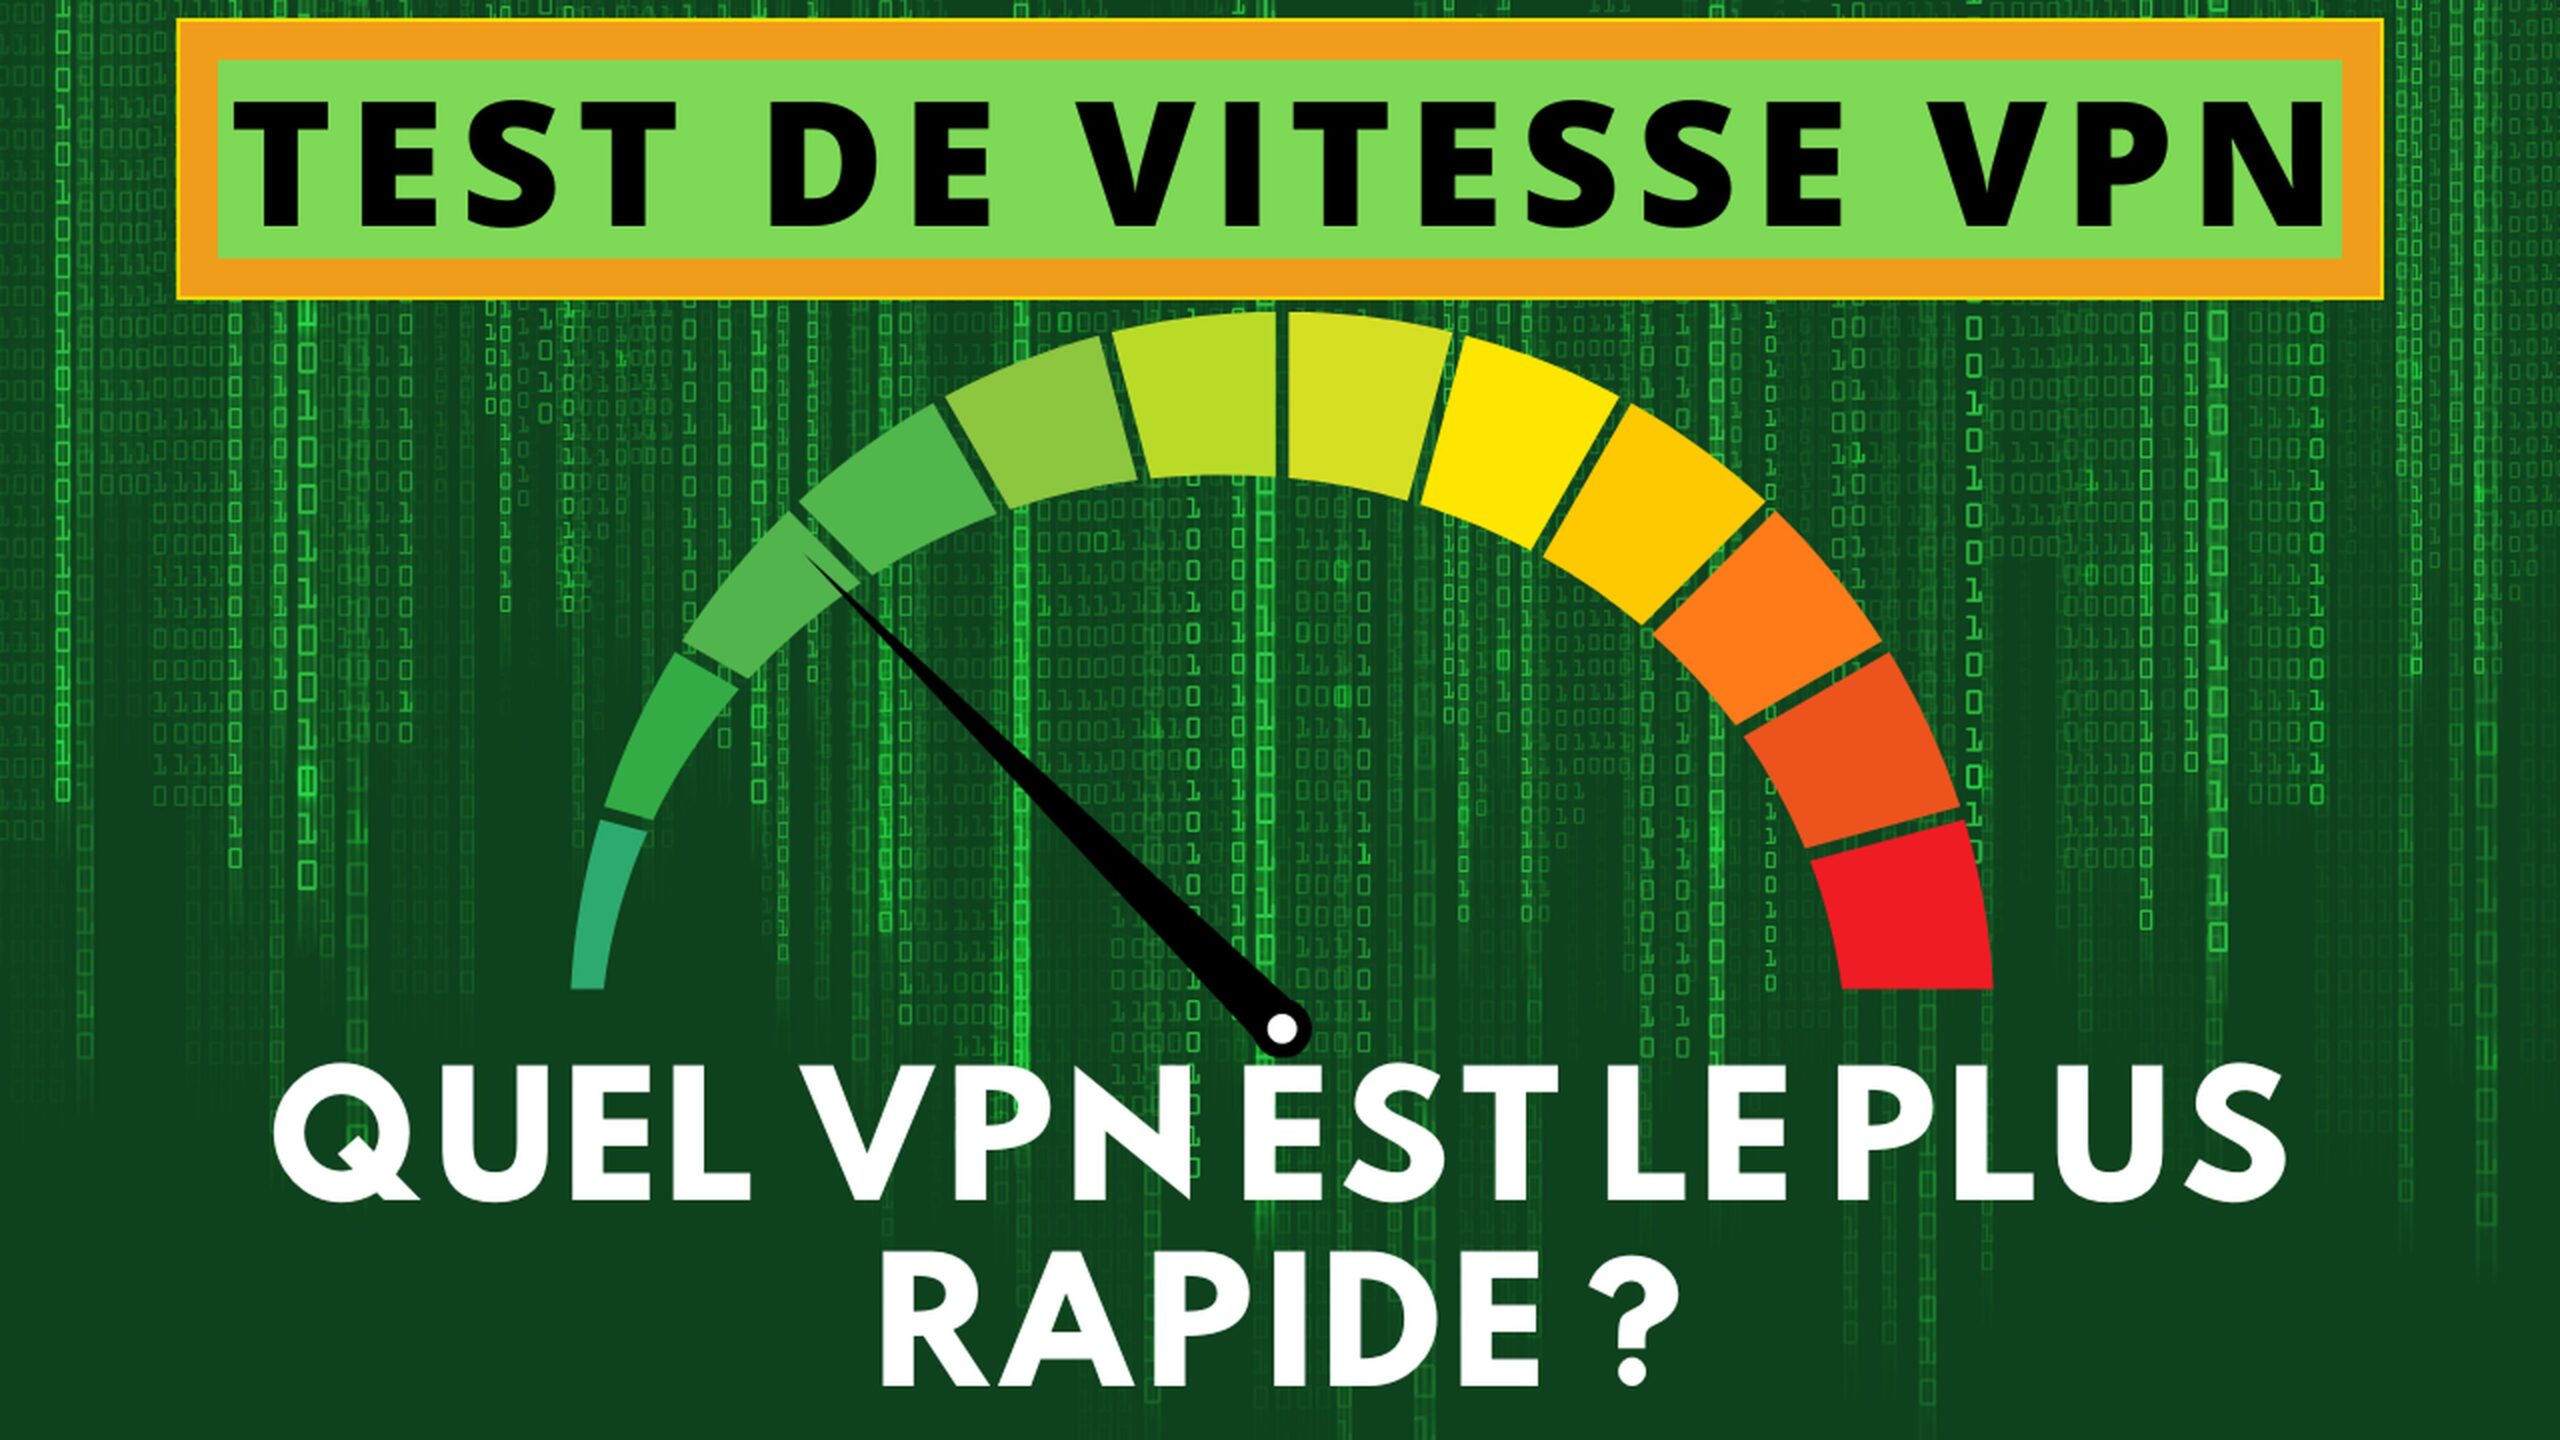 Quel VPN offre la meilleure vitesse ? – Test VPN les plus rapides